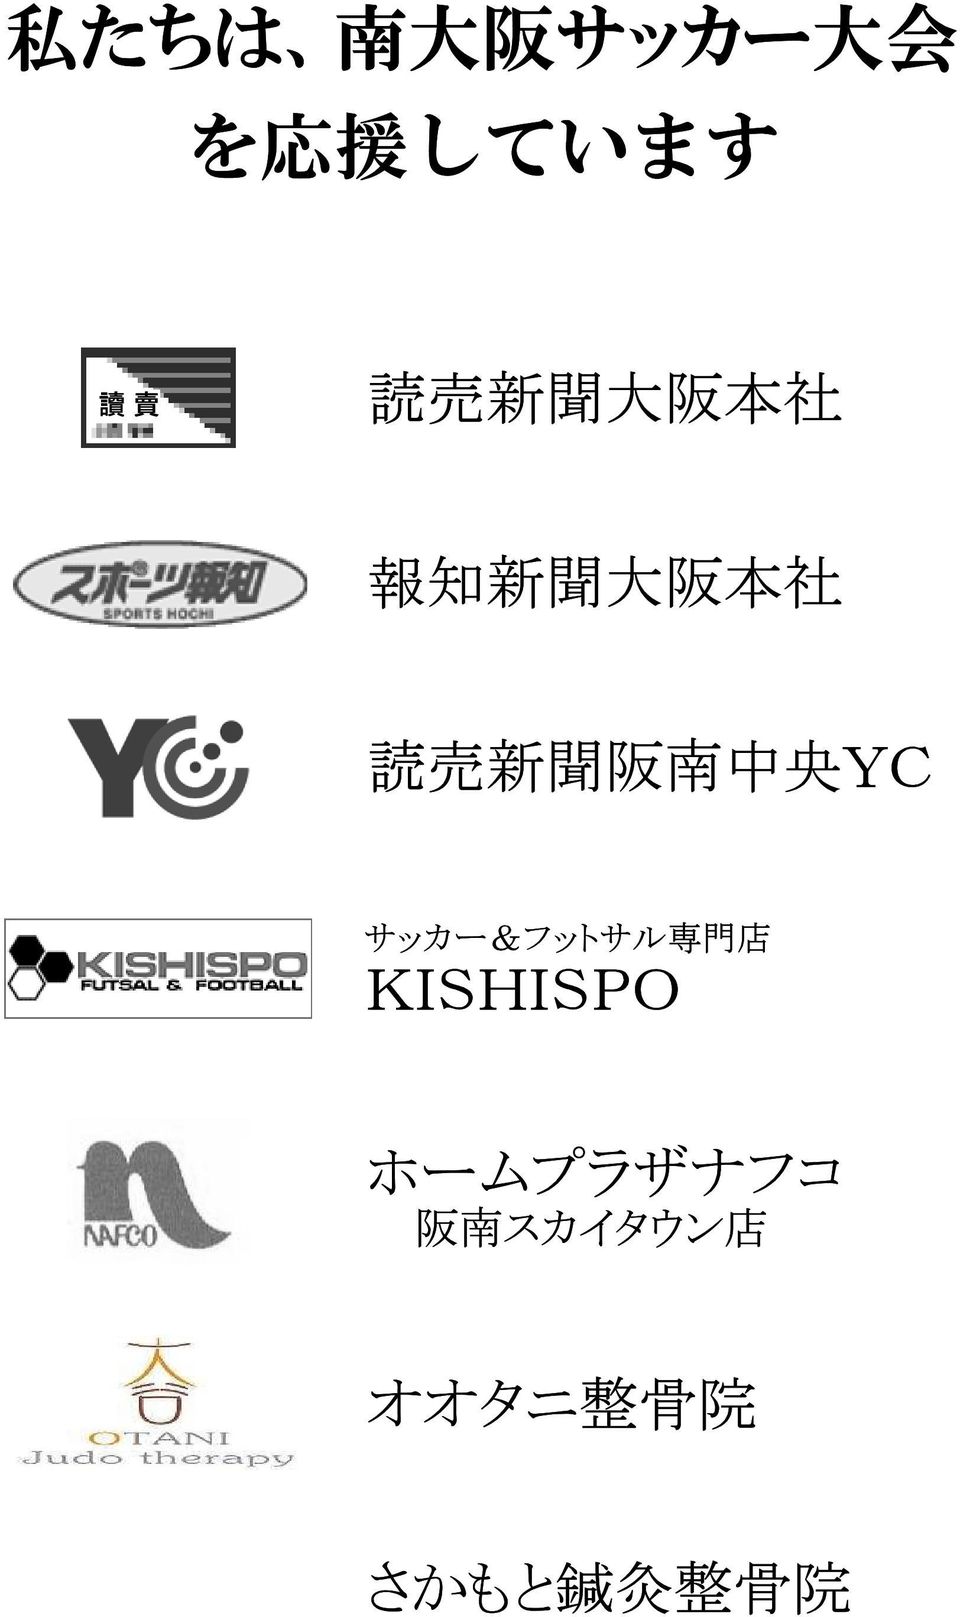 中 央 YC サッカー&フットサル 専 門 店 KISHISPO